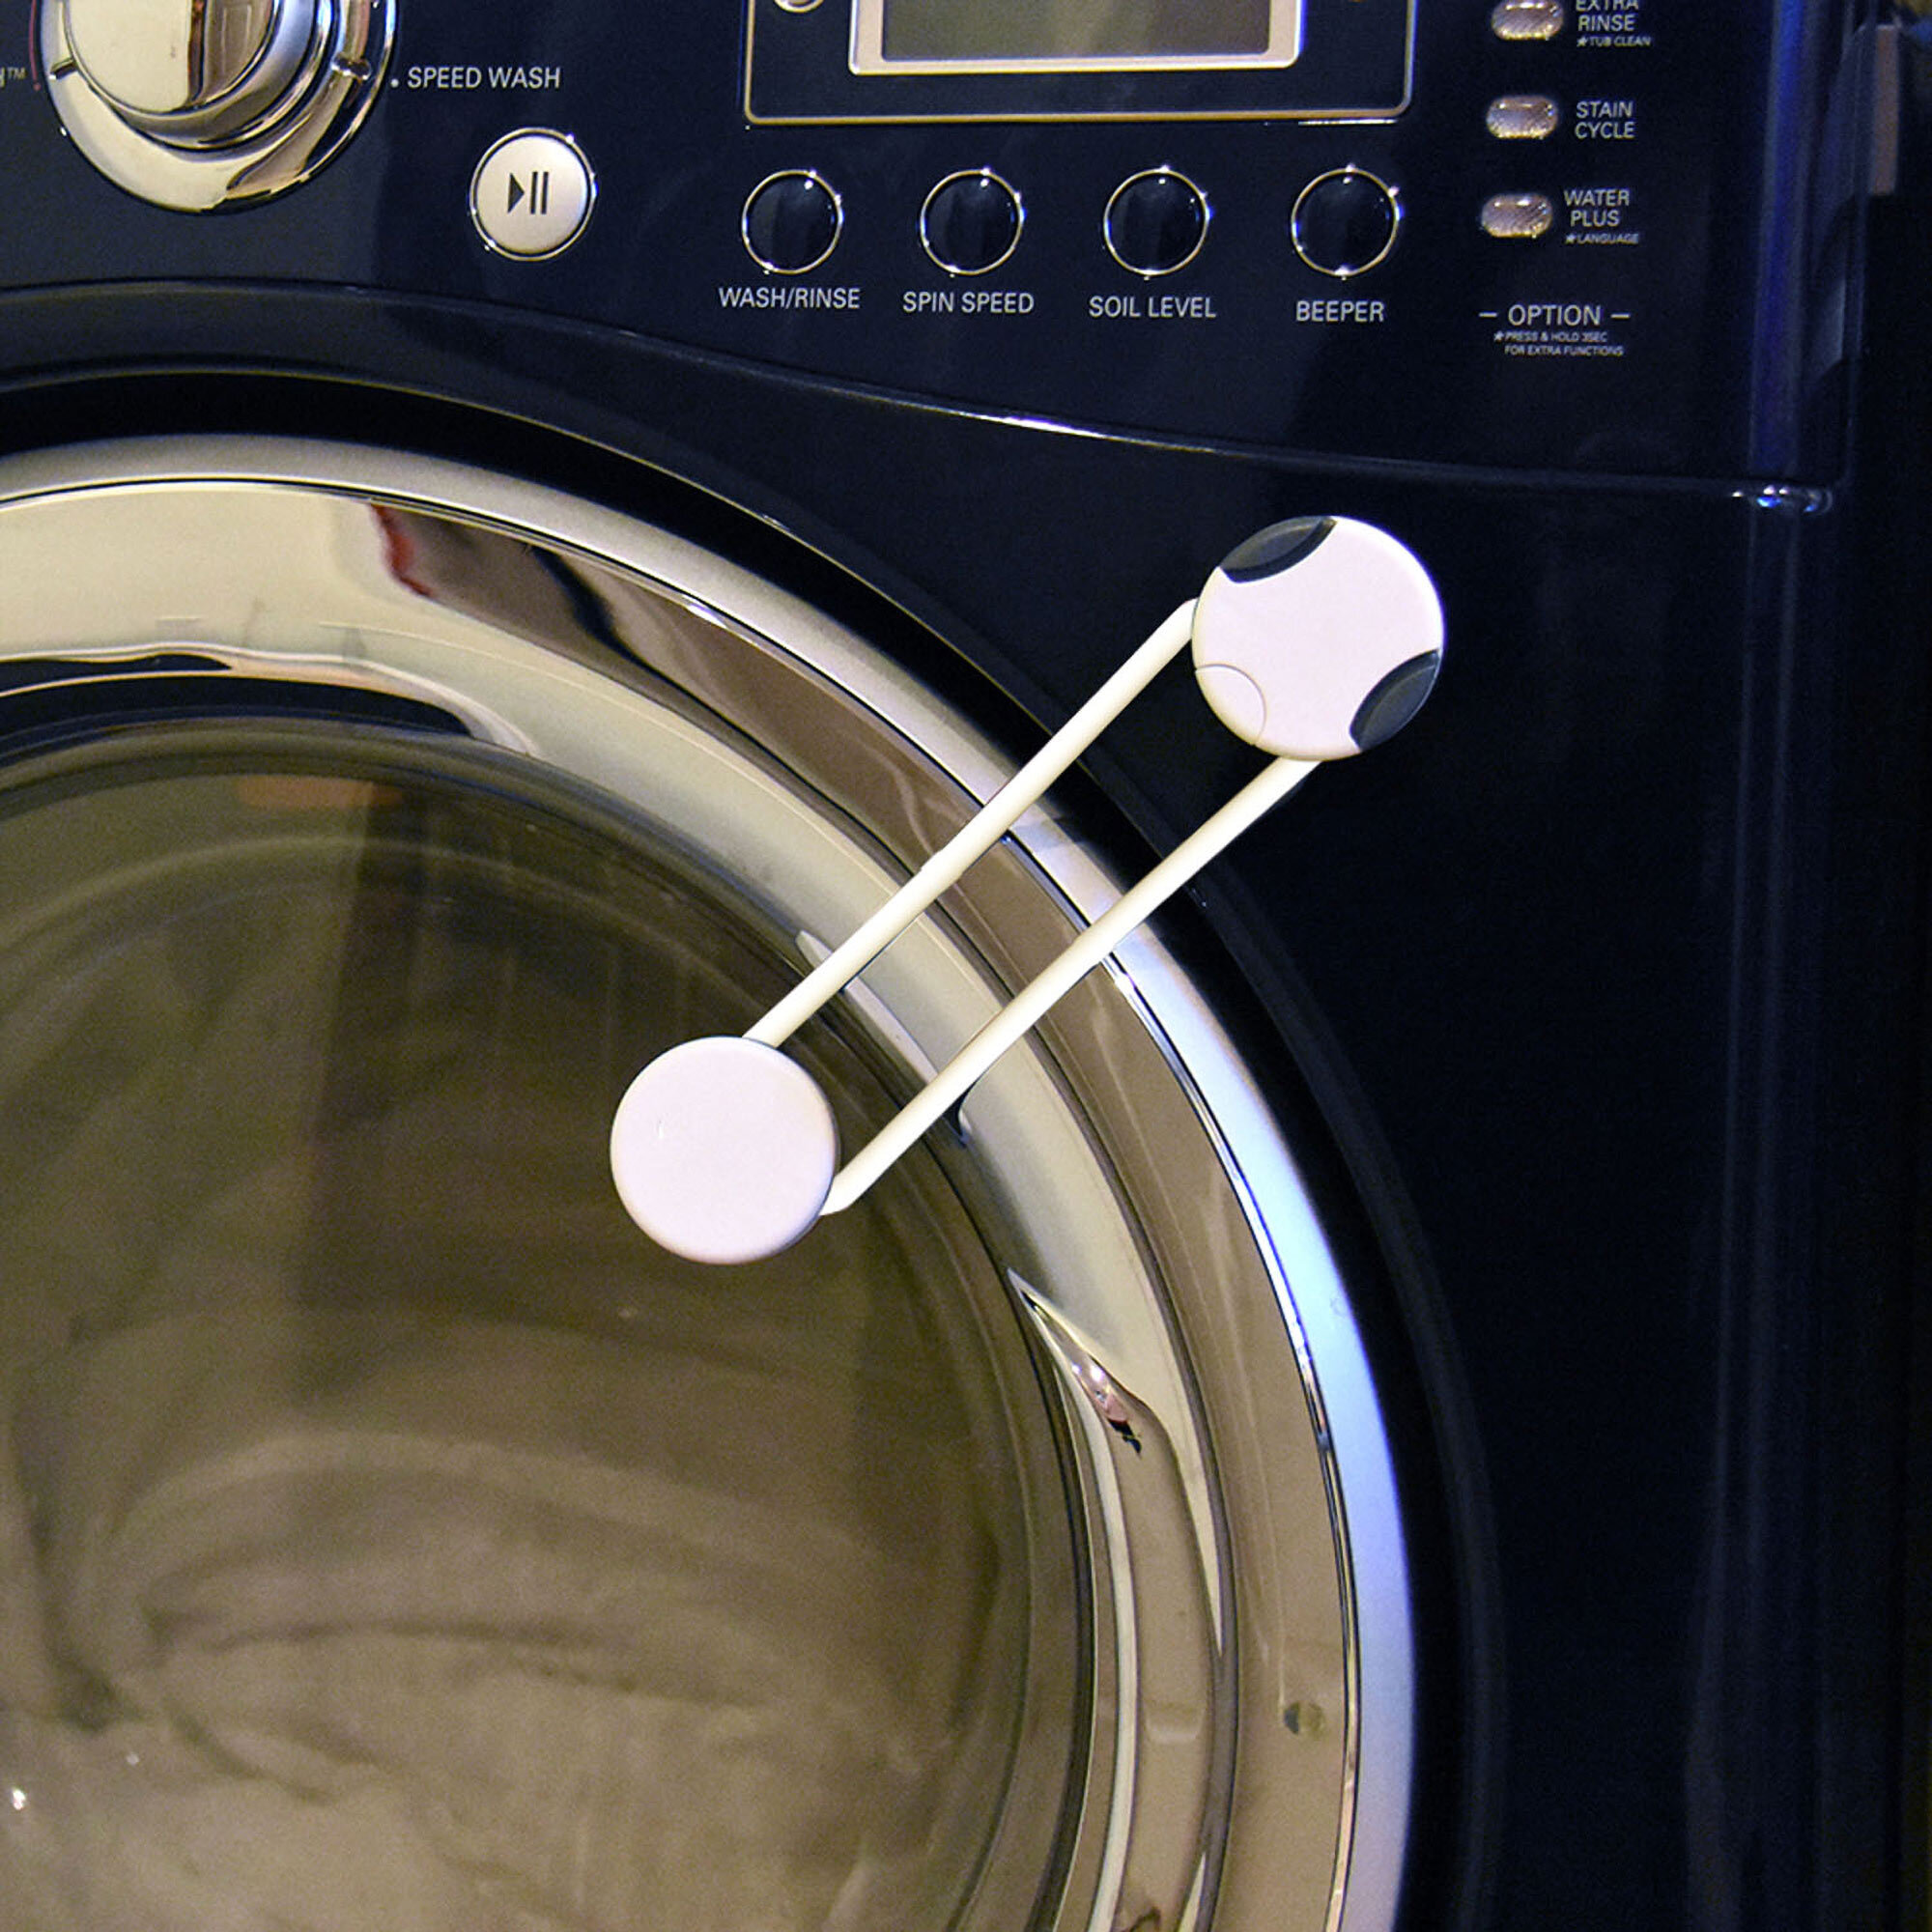 Adhesive Flexible Multi-Lock on clothing washer